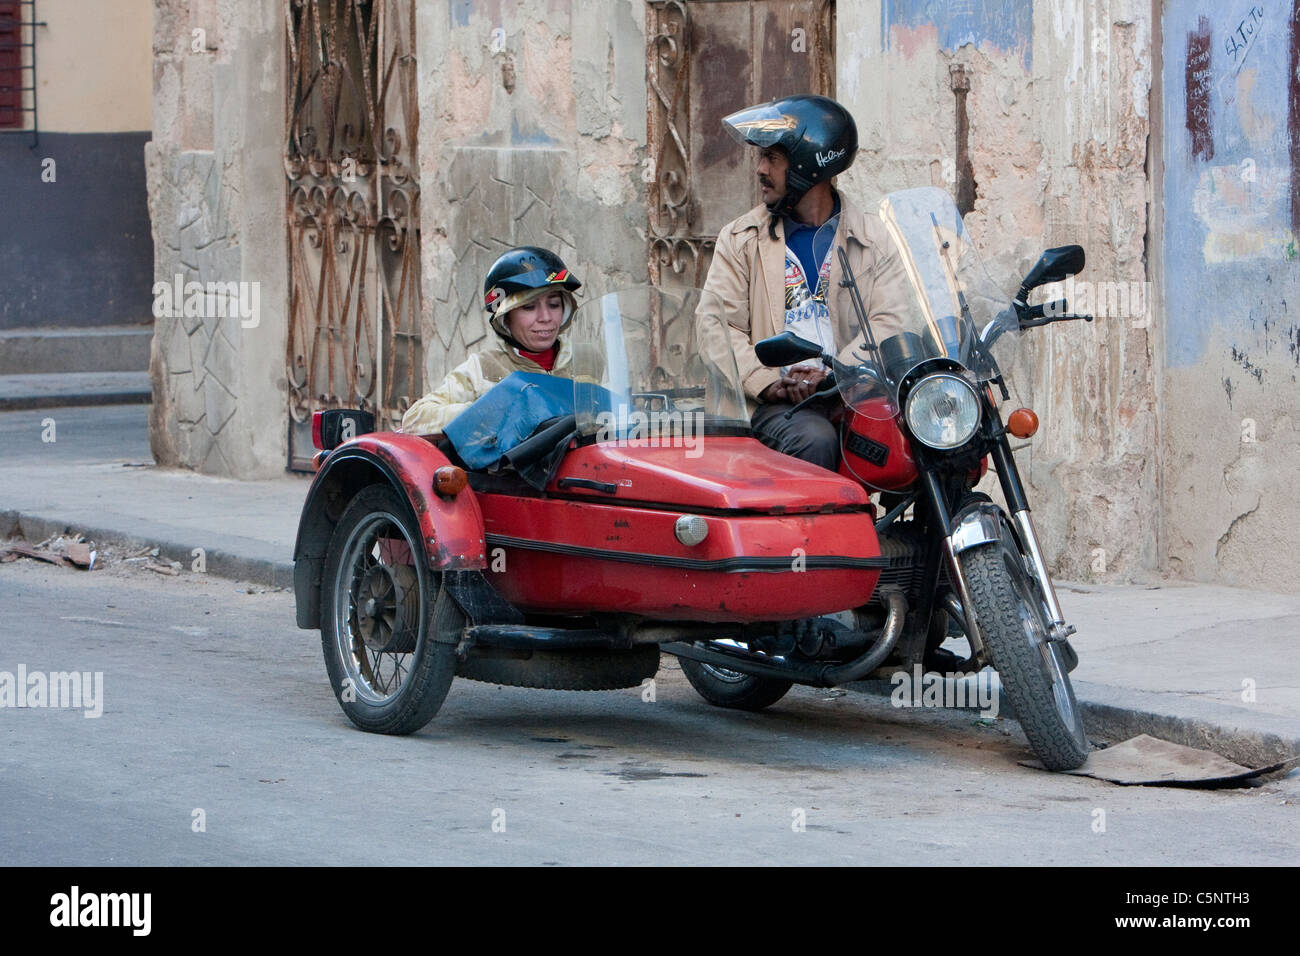 Kuba, Havanna. Paar, Reiten in Motorrad mit Beiwagen. Stockfoto